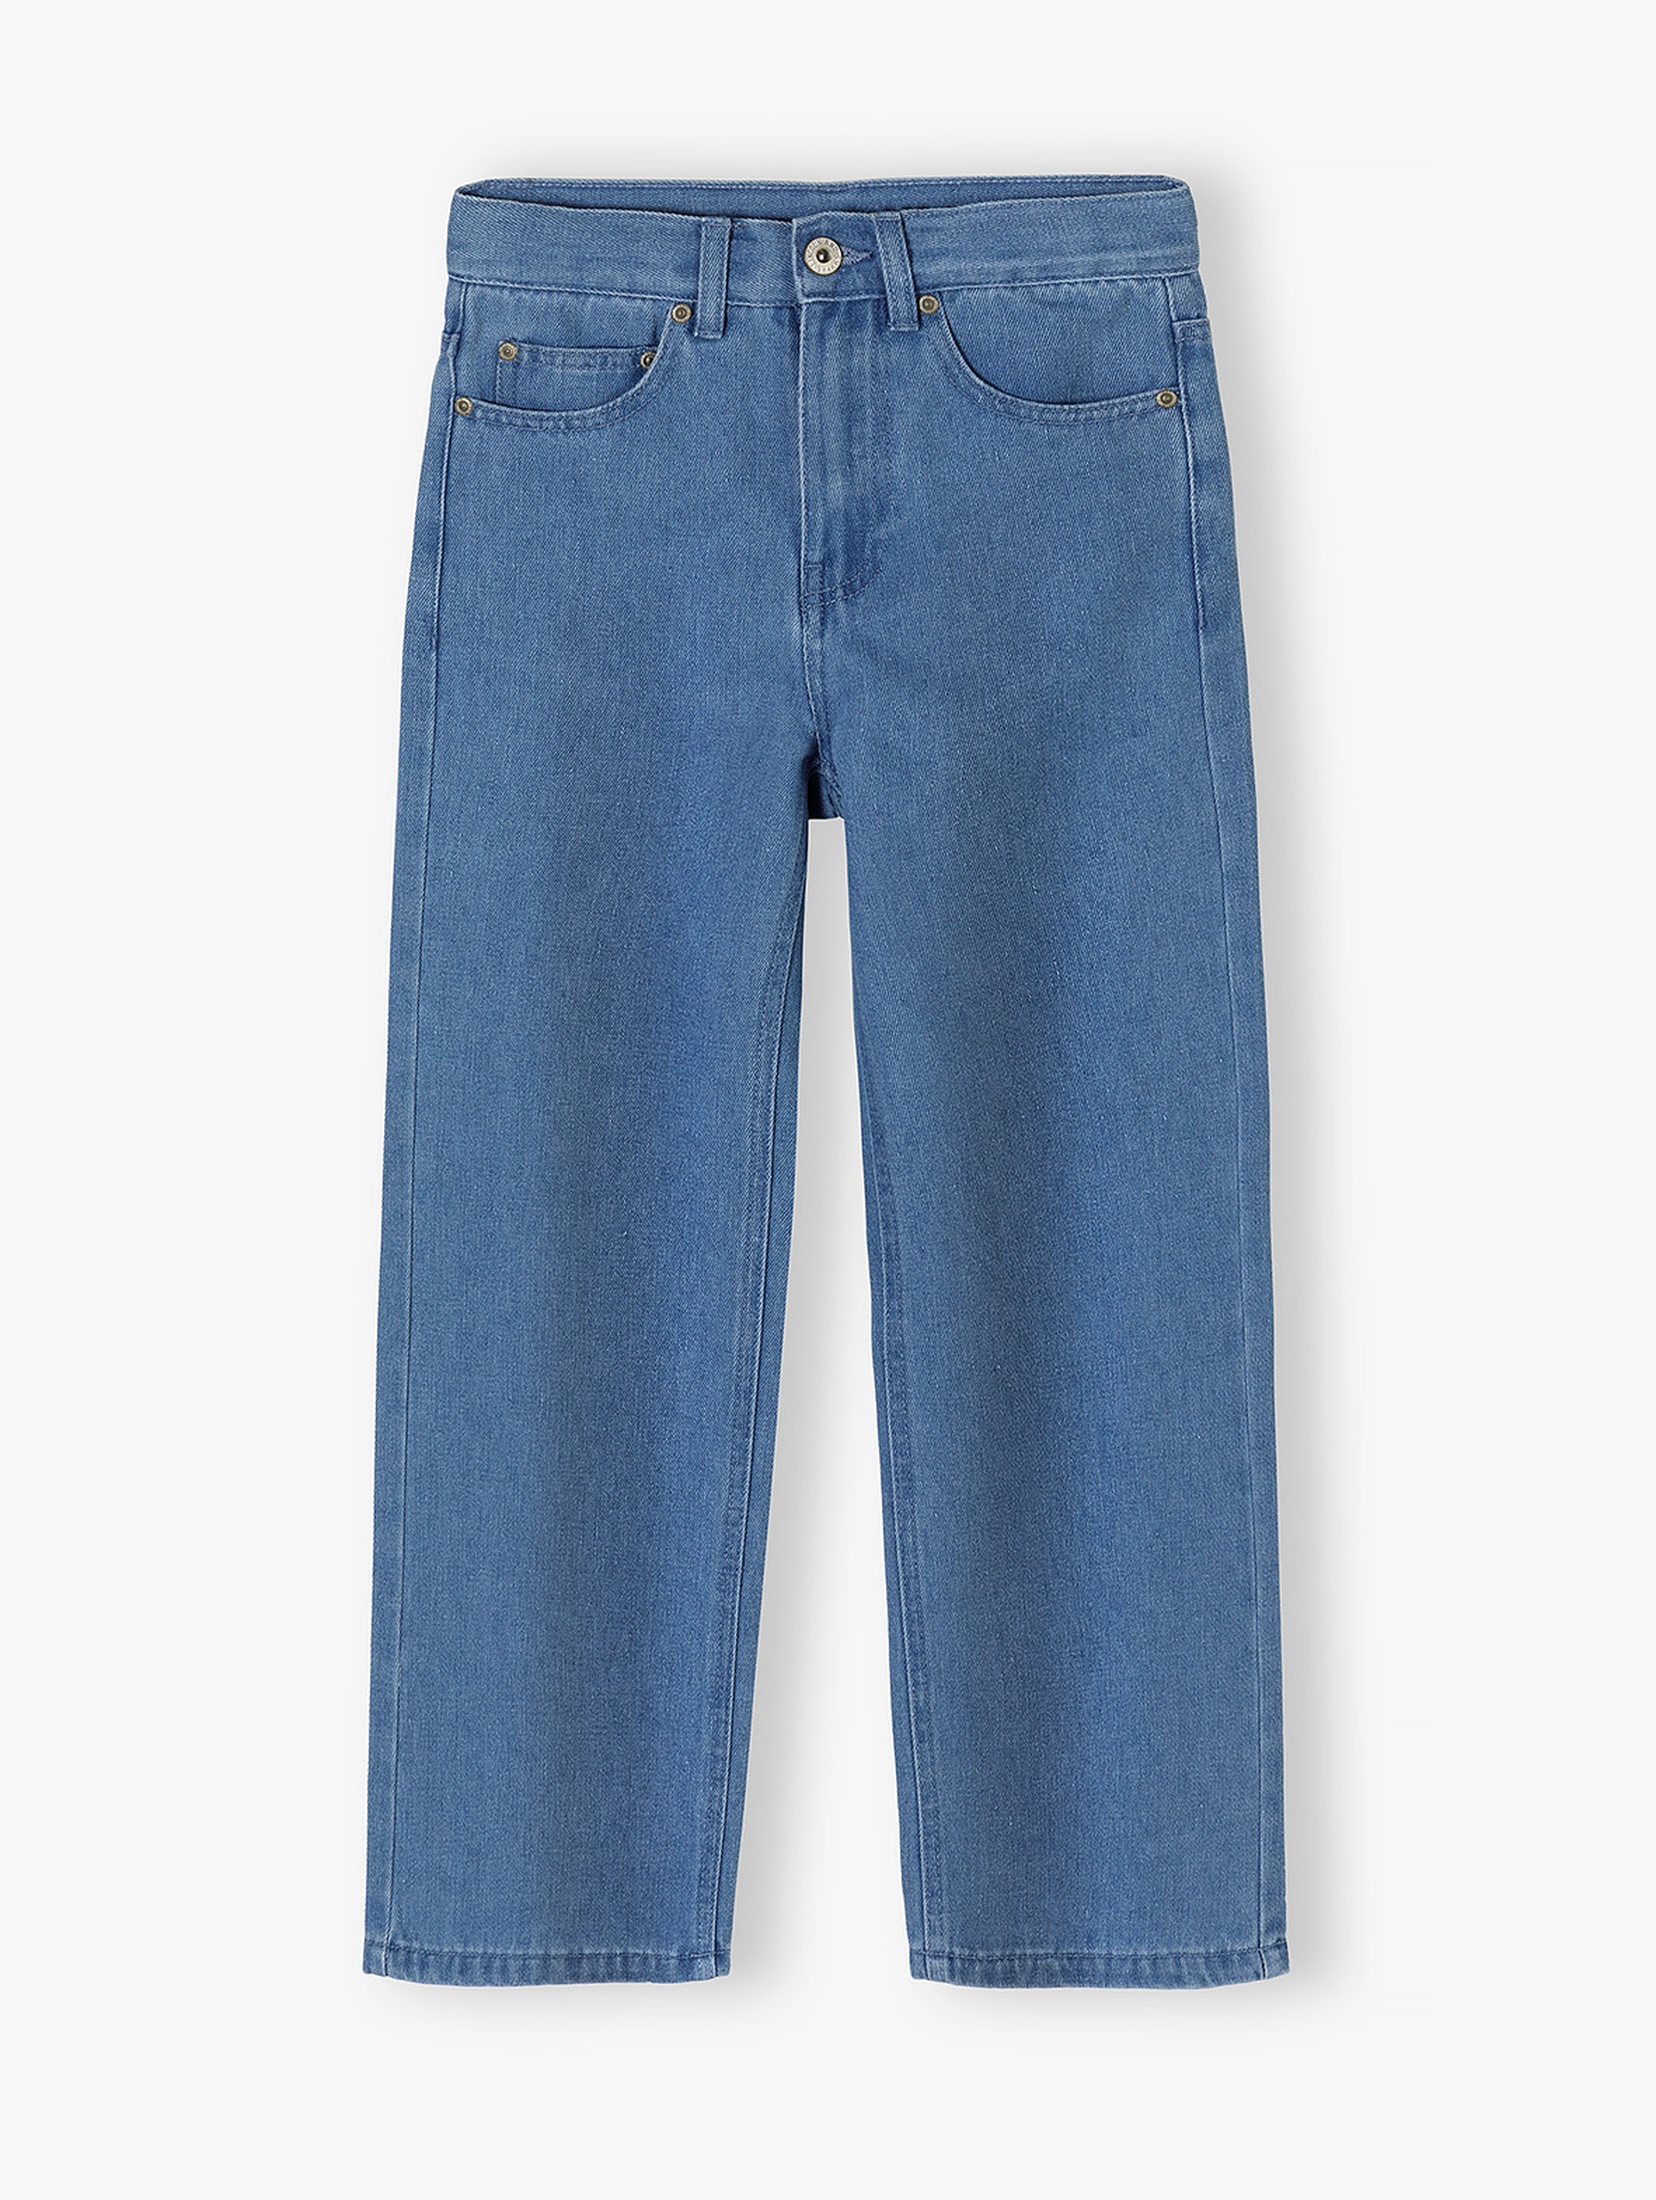 Jeansowe spodnie dla dziewczynki - wide leg -niebieskie